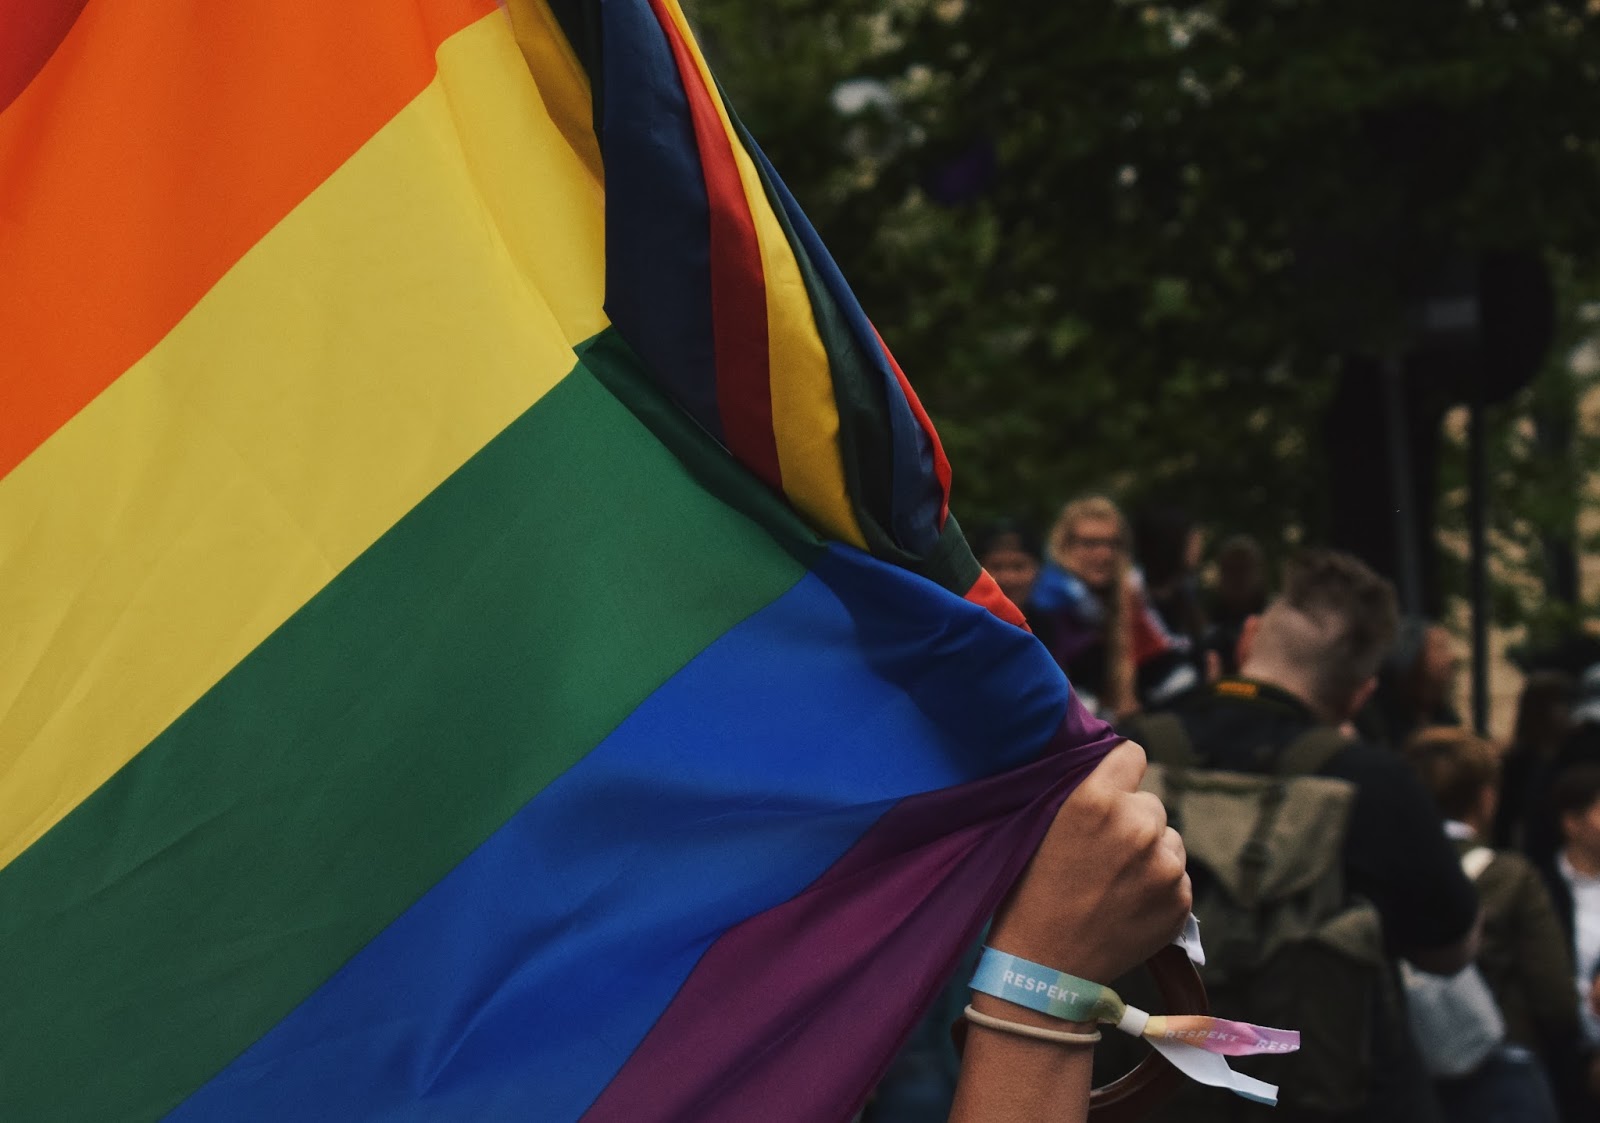 helsinki pride pride-kulkue lgbt+ ihmisoikeudet homoseksuaalisuus seksuaalivähemmistö vähemmistö lgbt sukupuolivähemmistö sateenkaari sateenkaarilippu gaypride